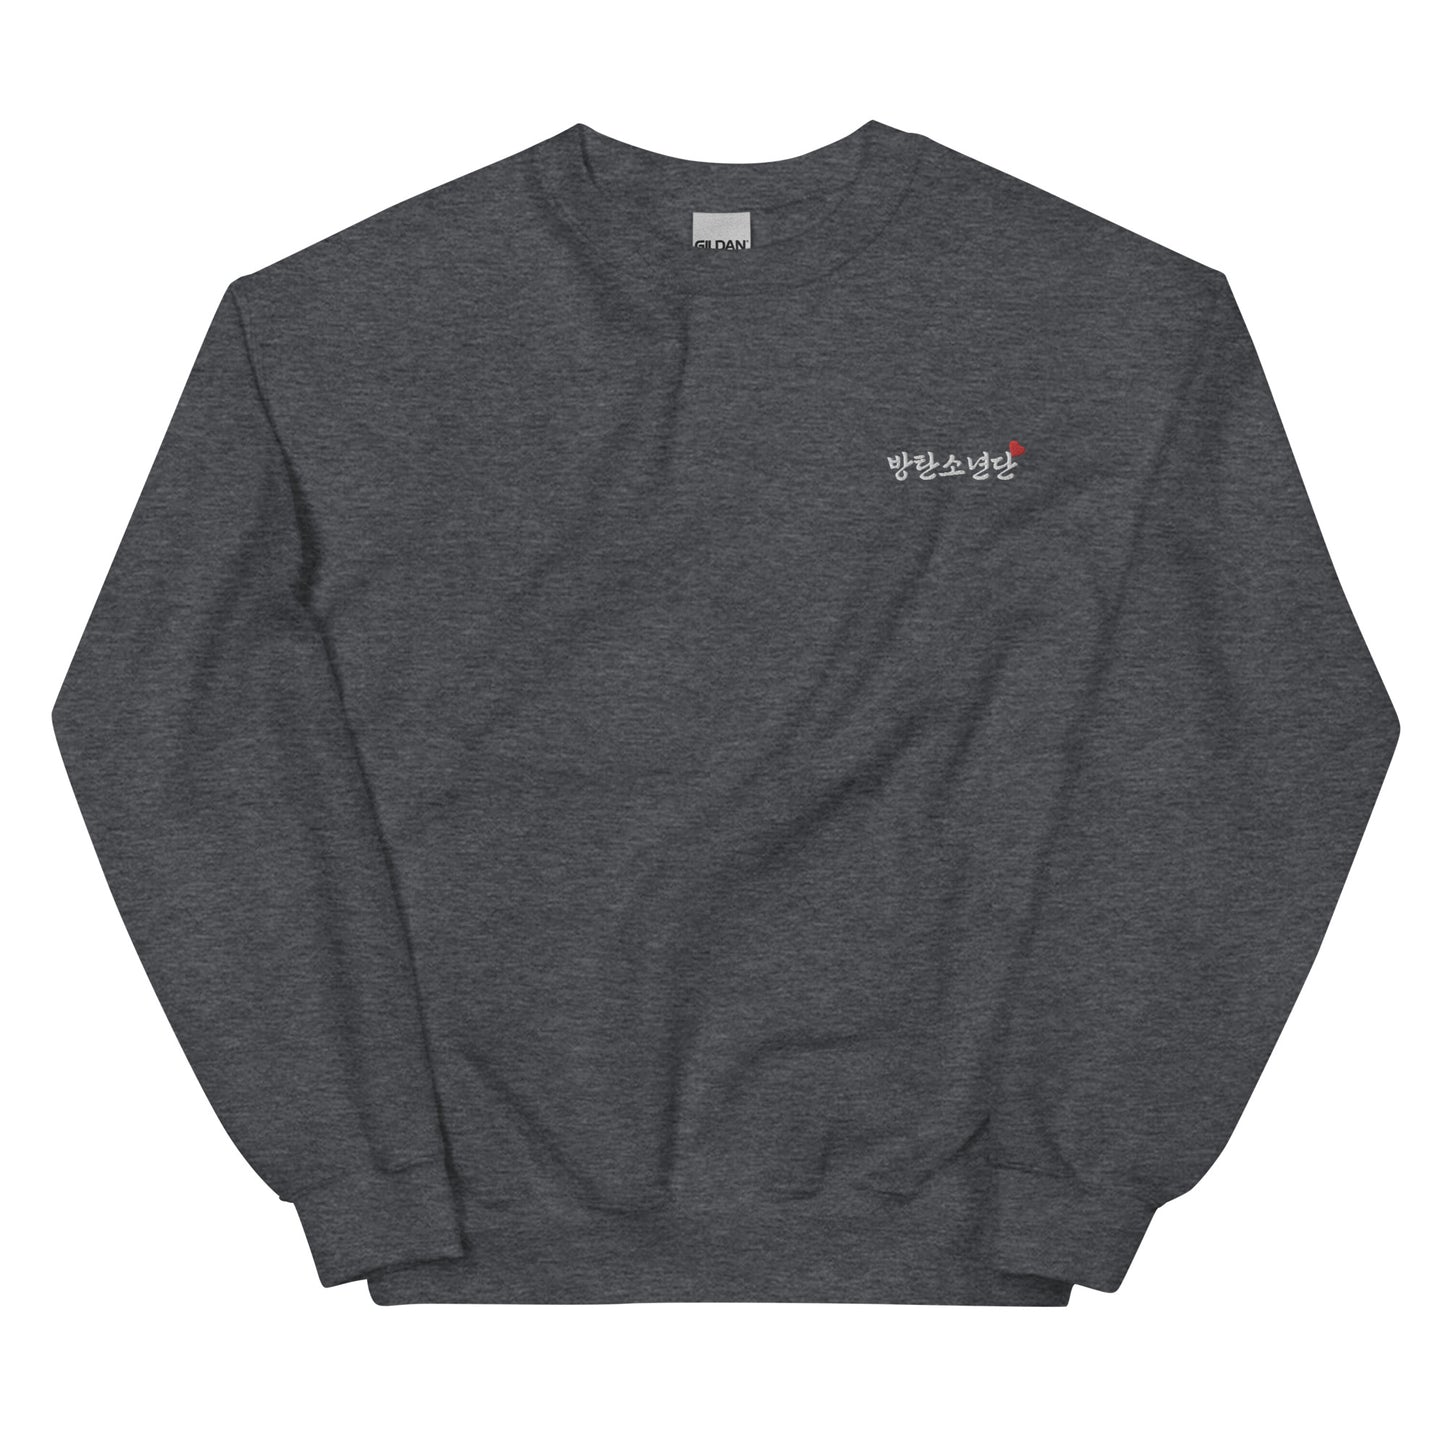 BTS in Korean Kpop BTS Goods Embroidery Unisex Sweatshirt